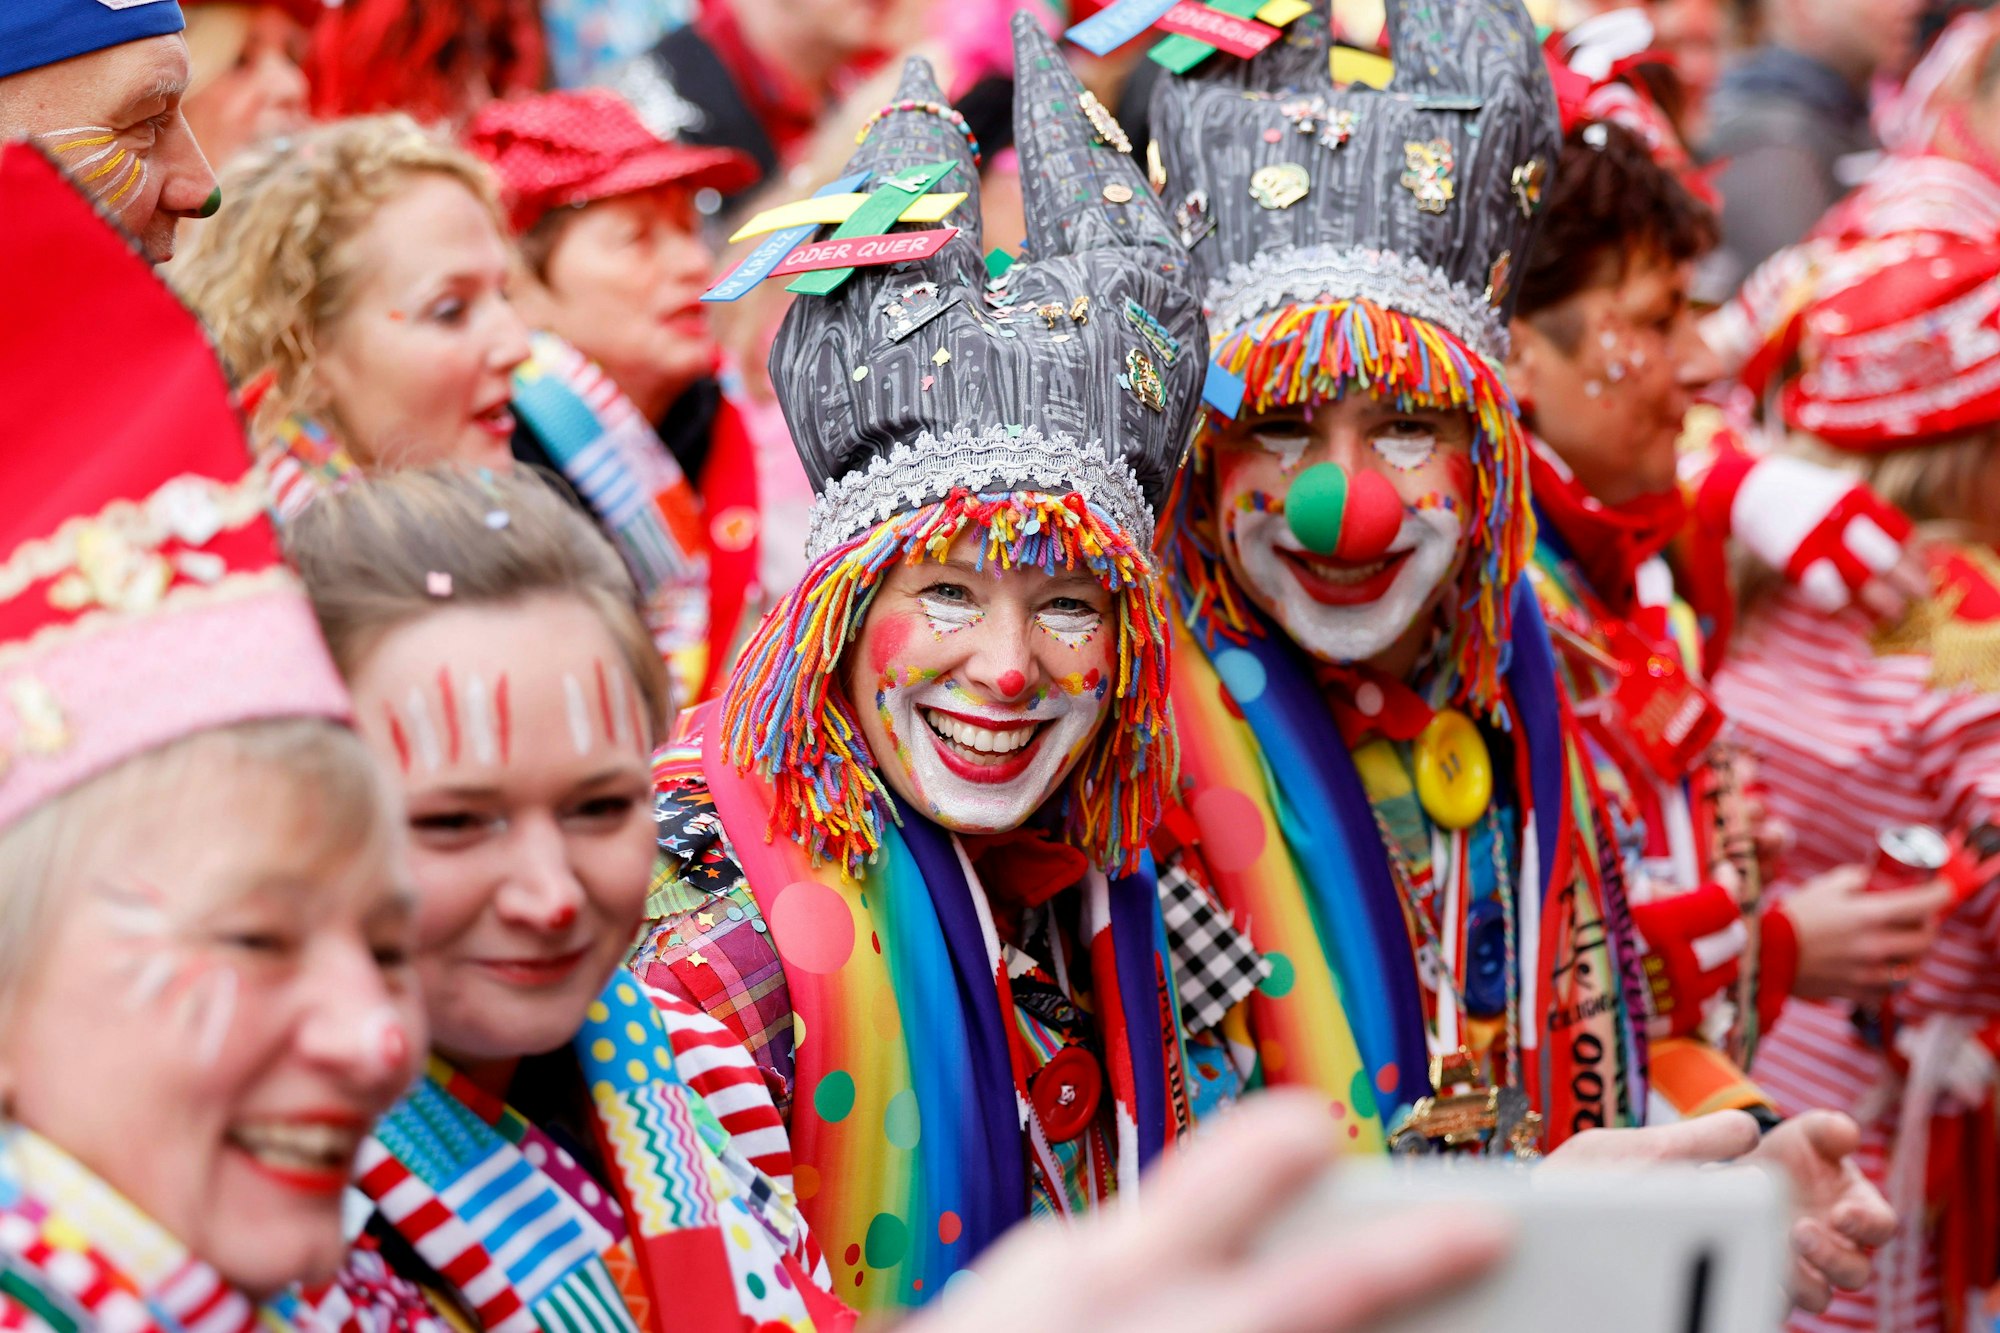 Viele Farben, der Dom als Hut: zwei Clowns feiern auf dem Alter Markt.